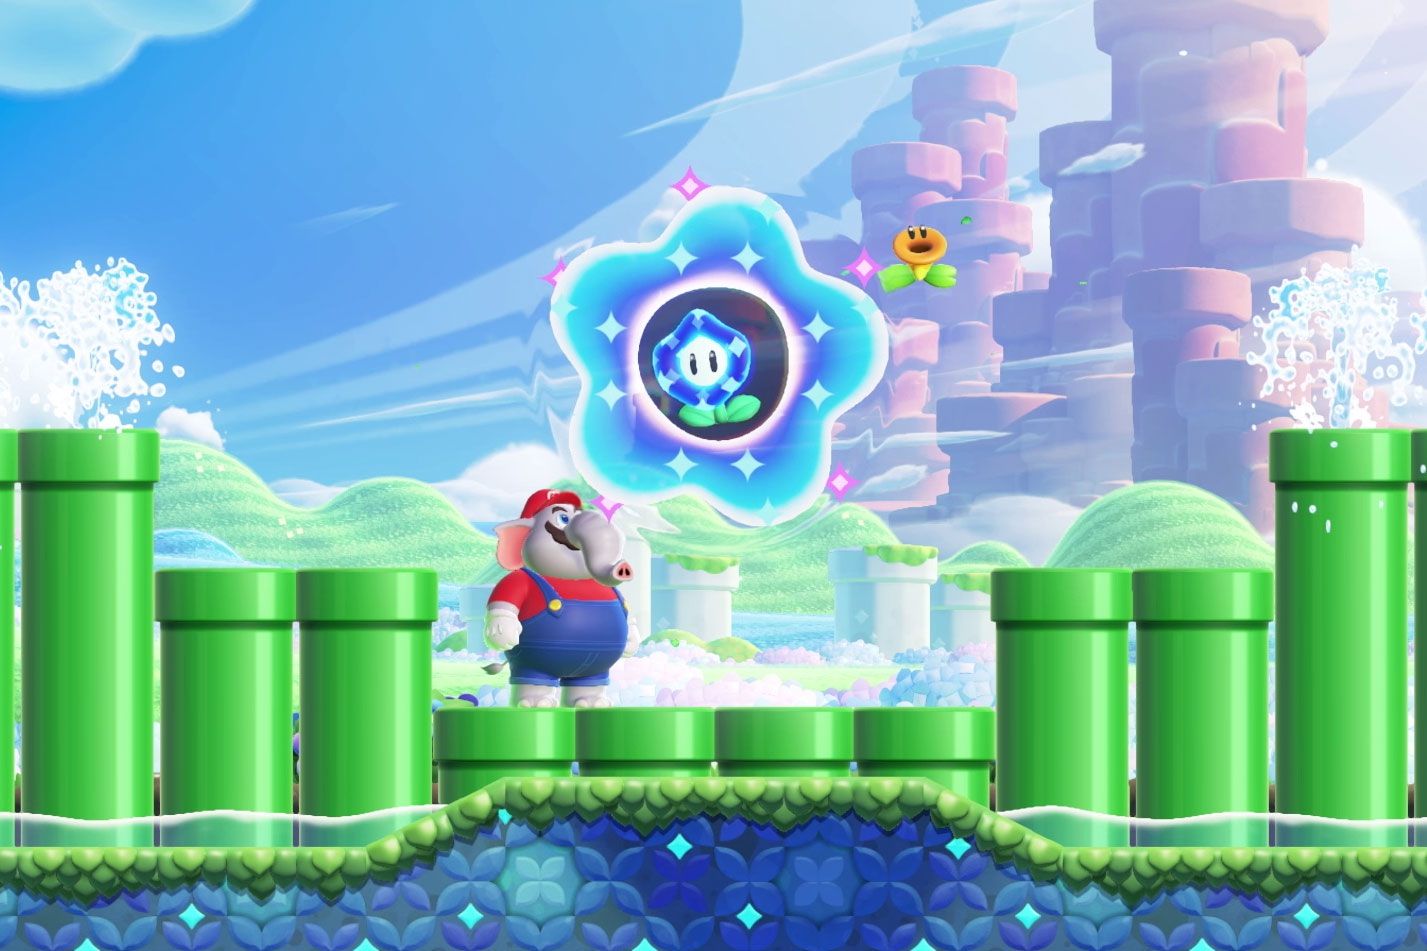 Super Mario Bros. Wonder, quanto tempo leva para completar o game